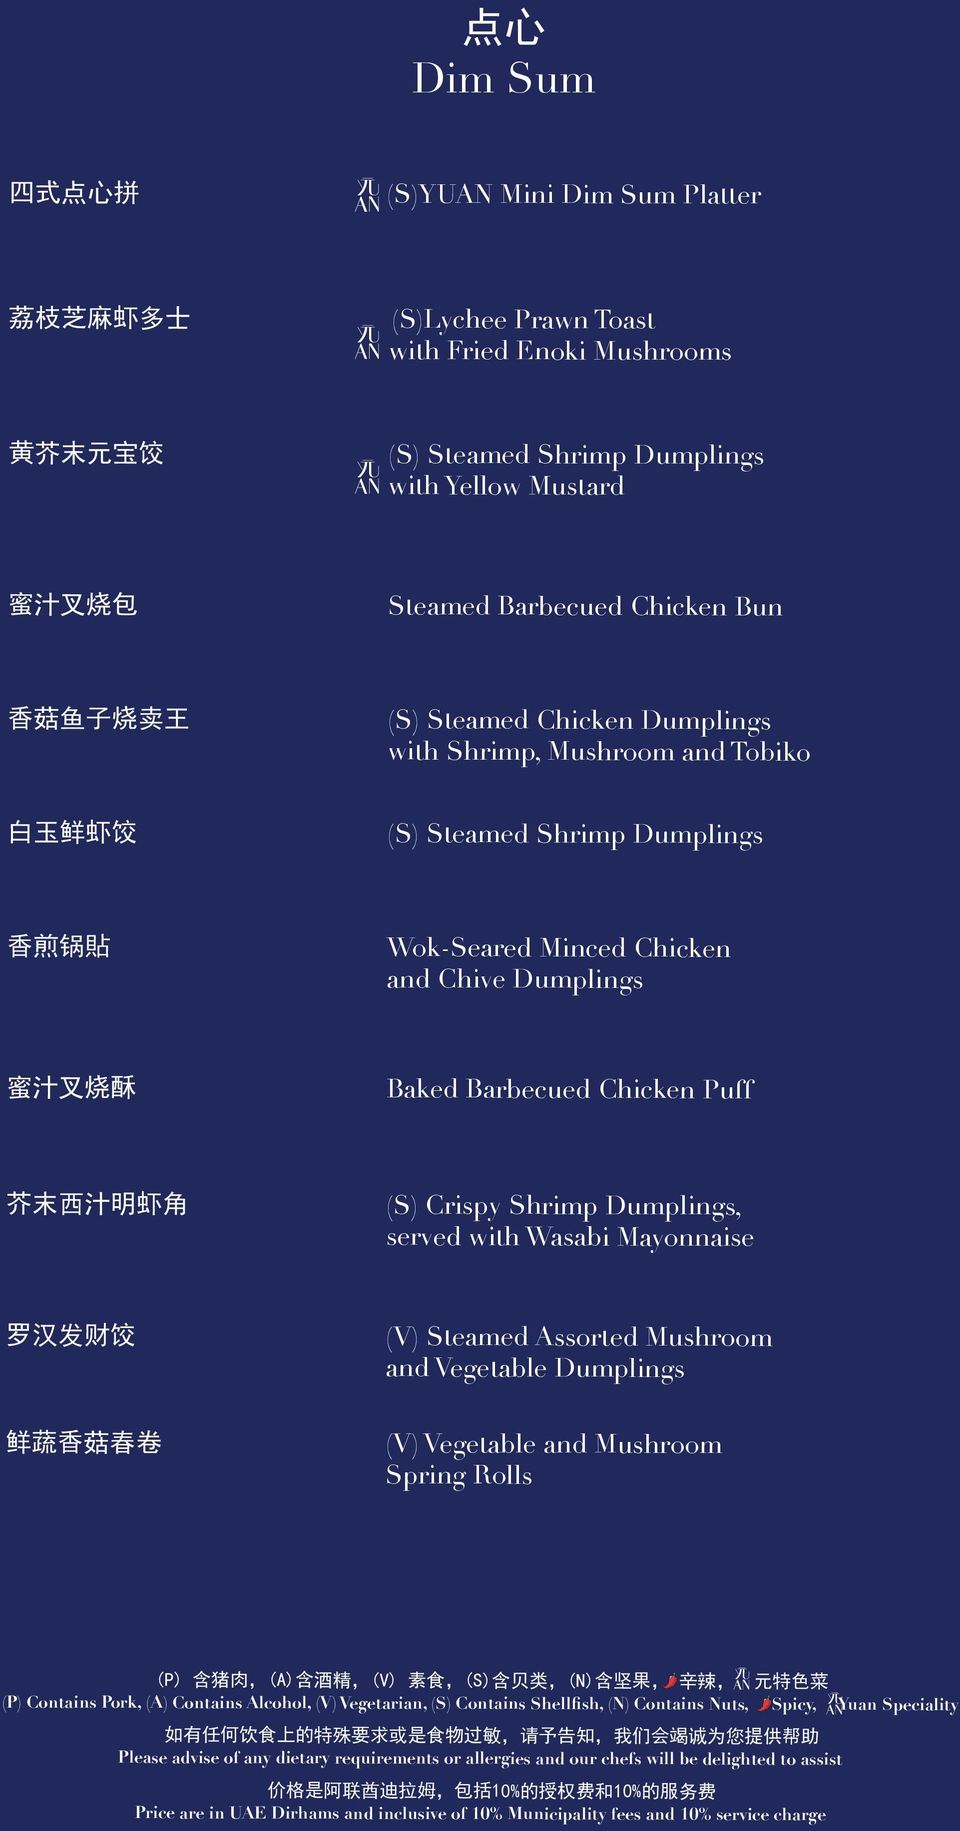 虾 饺 (S) Steamed Shrimp Dumplings 香 煎 锅 貼 Wok-Seared Minced Chicken and Chive Dumplings 蜜 汁 叉 烧 酥 Baked Barbecued Chicken Puff 芥 末 西 汁 明 虾 角 (S) Crispy